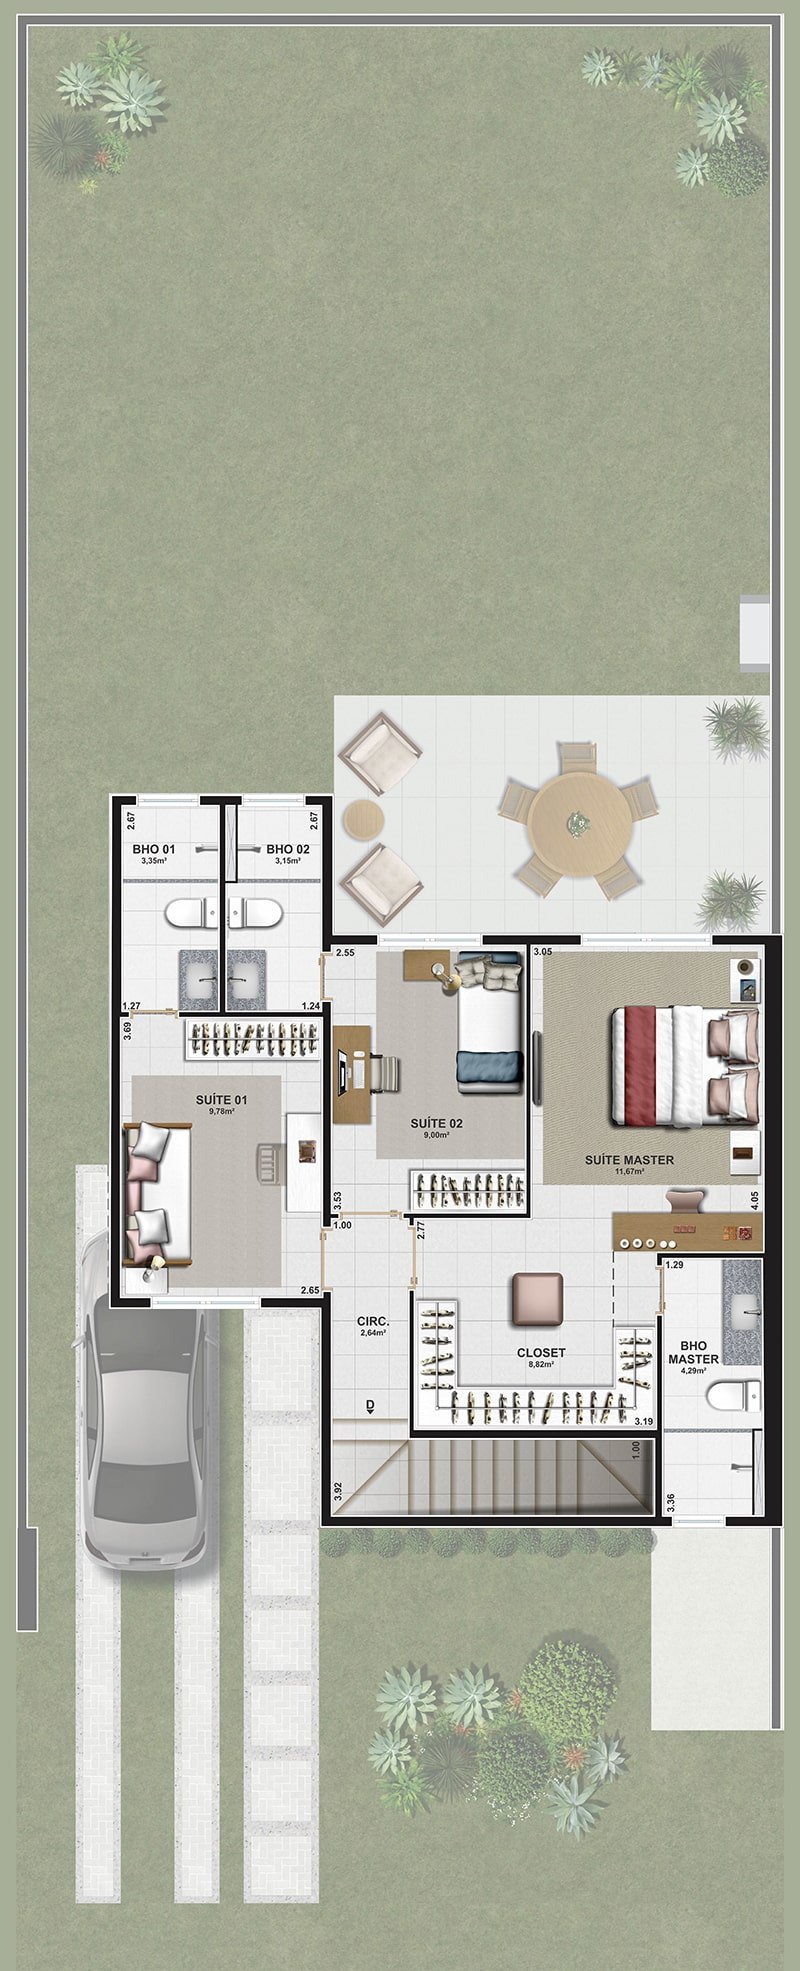 Casa Sobrado - 3 suítes e home office - 150 m2